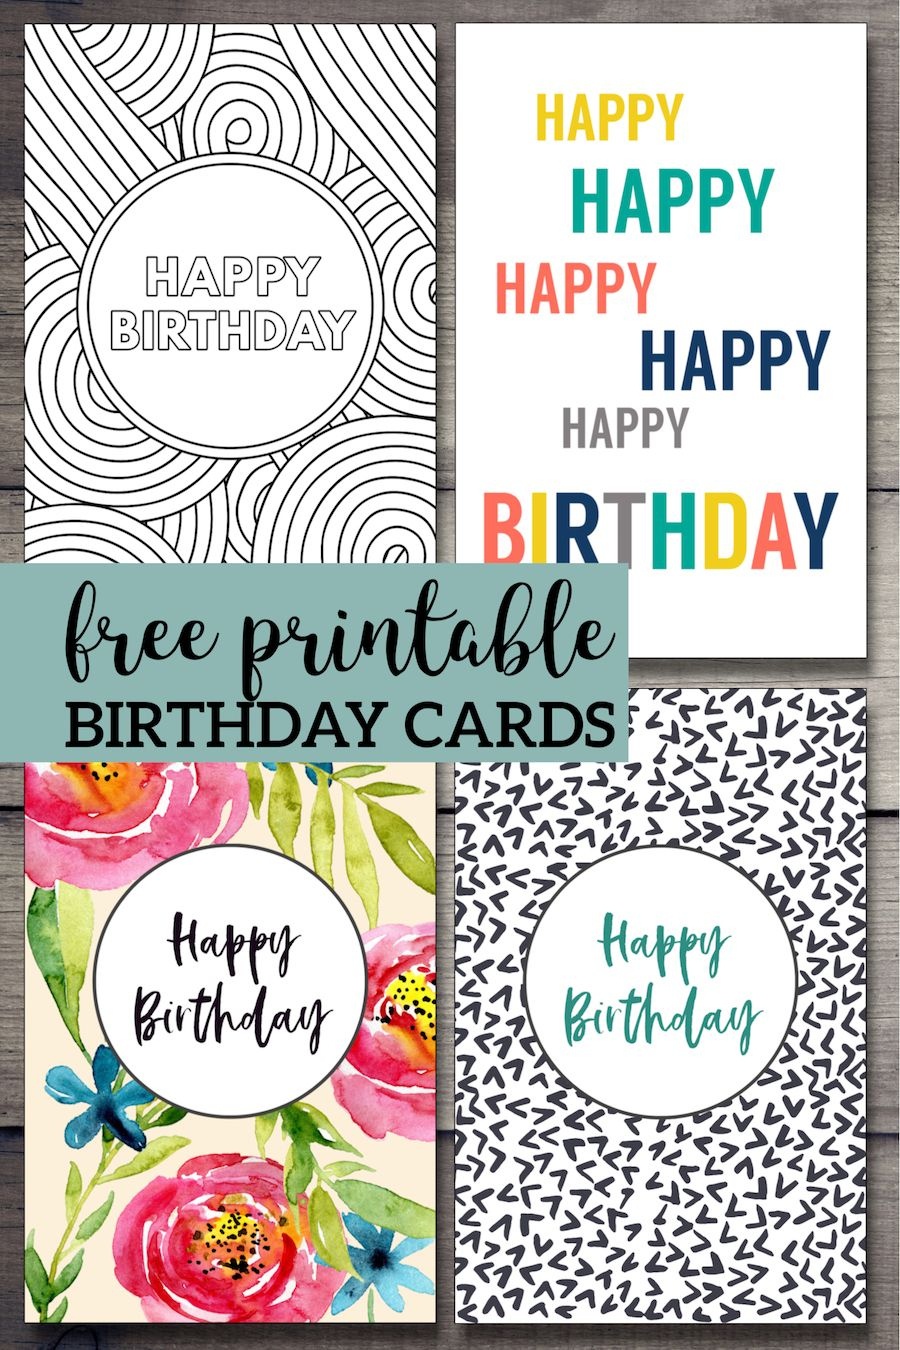 Free Printable Birthday Cards | Birthday Cards | Free Printable - Free Printable Birthday Cards For Adults